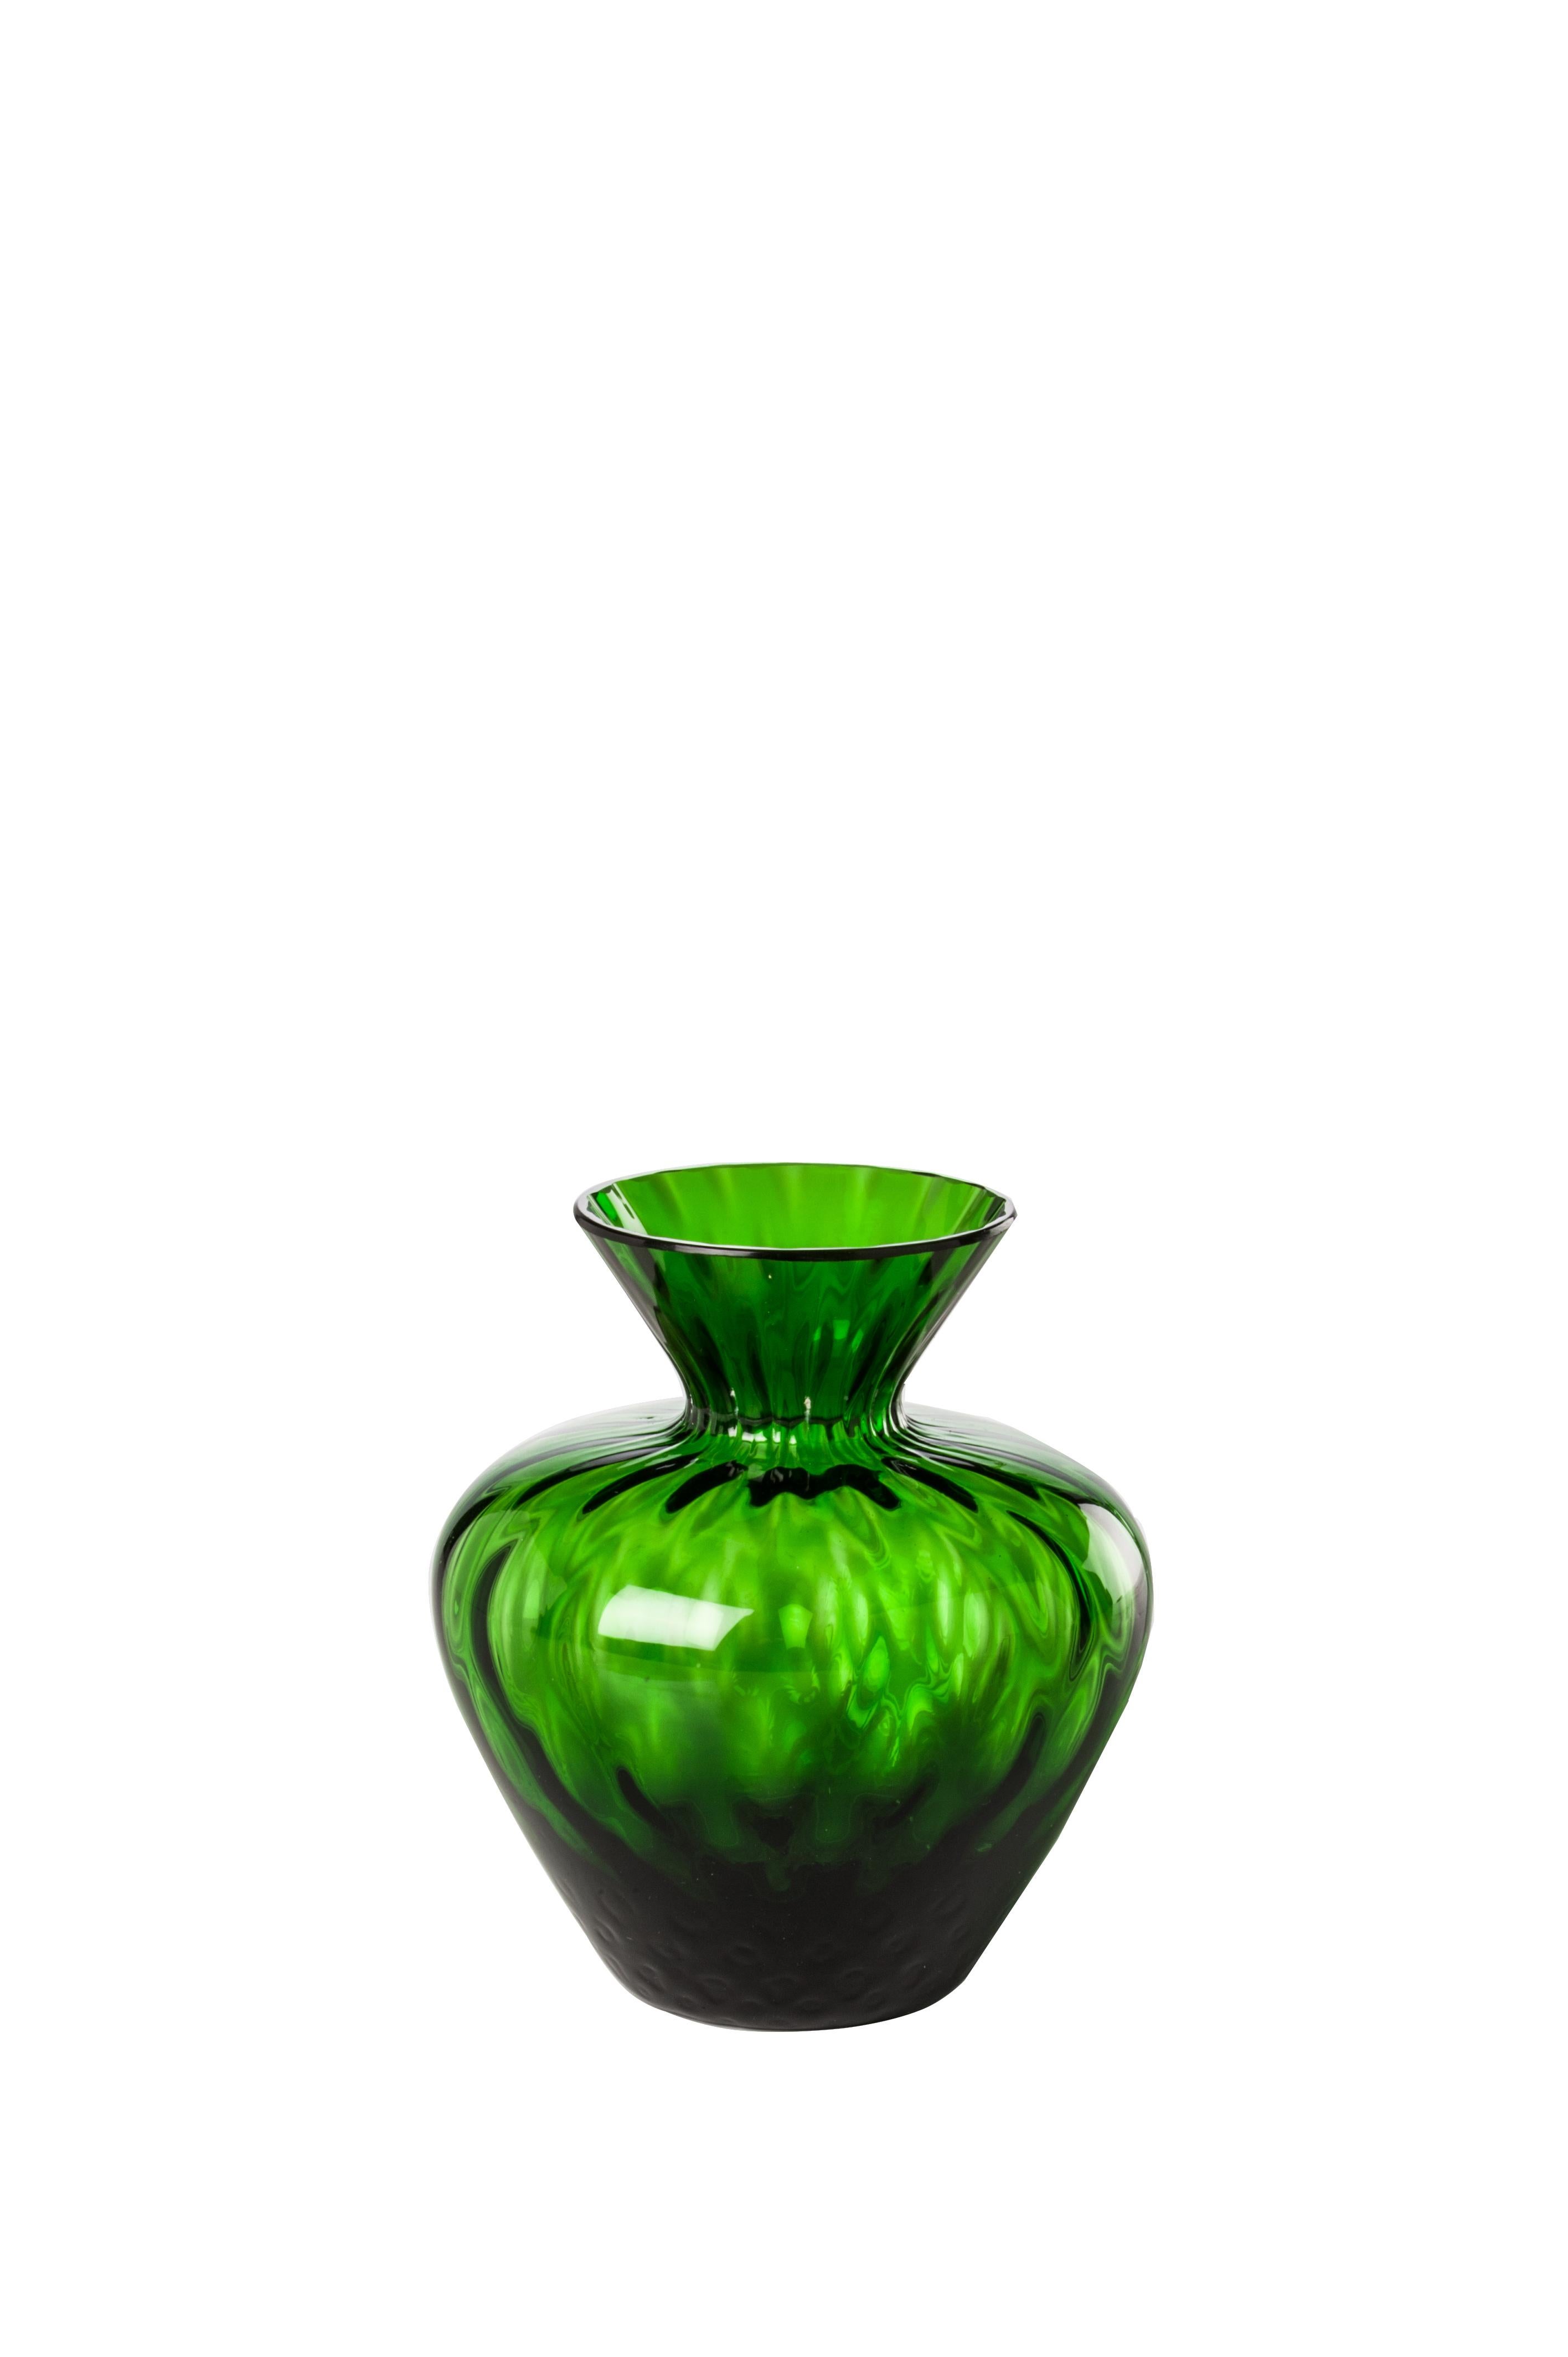 Vase en verre Venini avec corps et col façonnés en vert gazon, conçu en 2017. Parfait pour la décoration d'intérieur, en tant que récipient ou élément de décoration pour n'importe quelle pièce. Egalement disponible dans d'autres couleurs sur